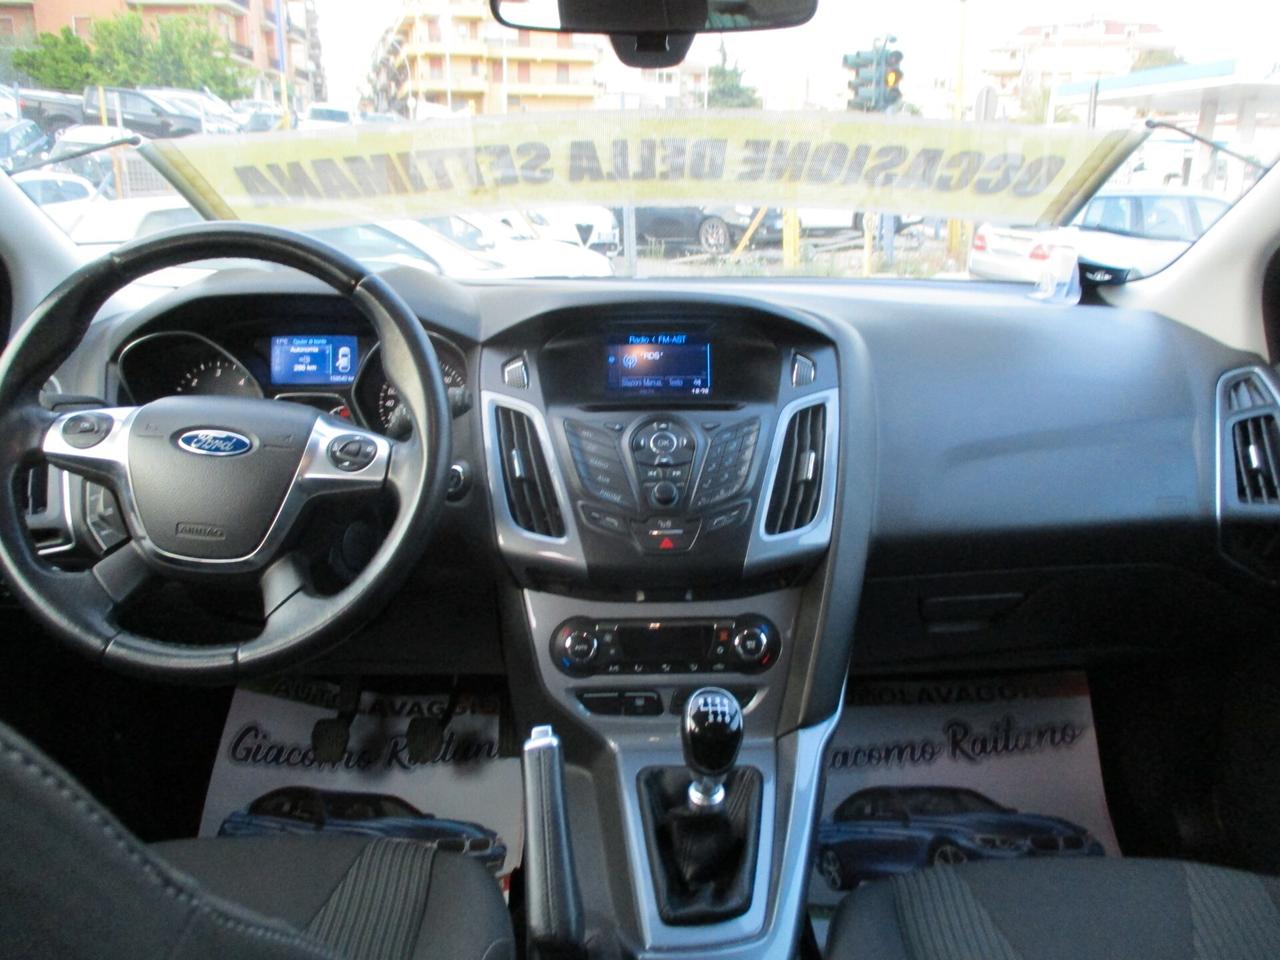 Ford Focus 1.6 TDCi 115 CV Titanium 2014